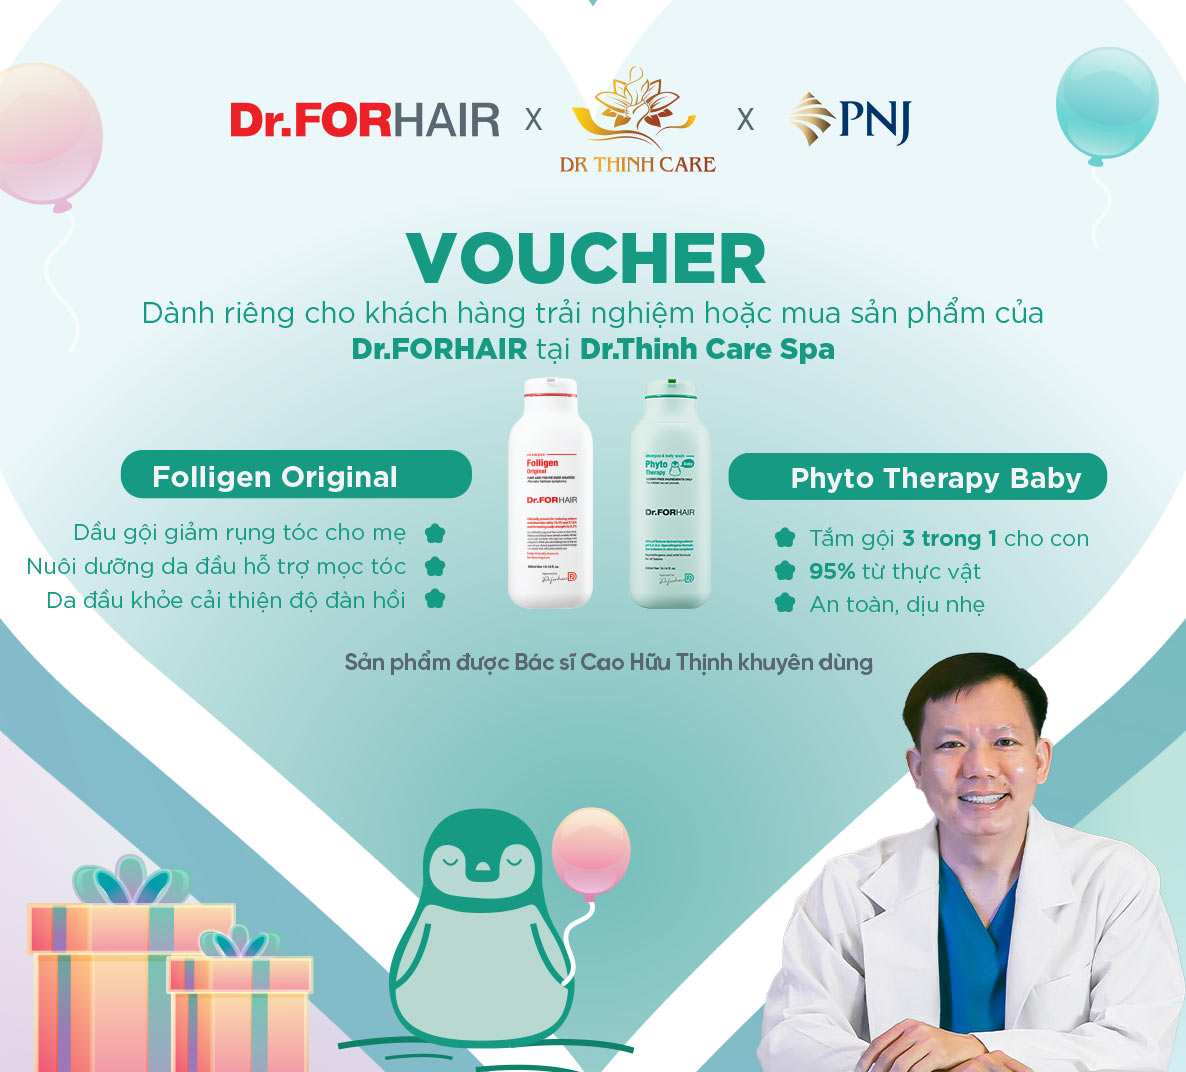 Món quà đặc biệt đến từ 3 thương hiệu uy tín Dr.FORHAIR, Dr.Thinh Care Spa và PNJ 